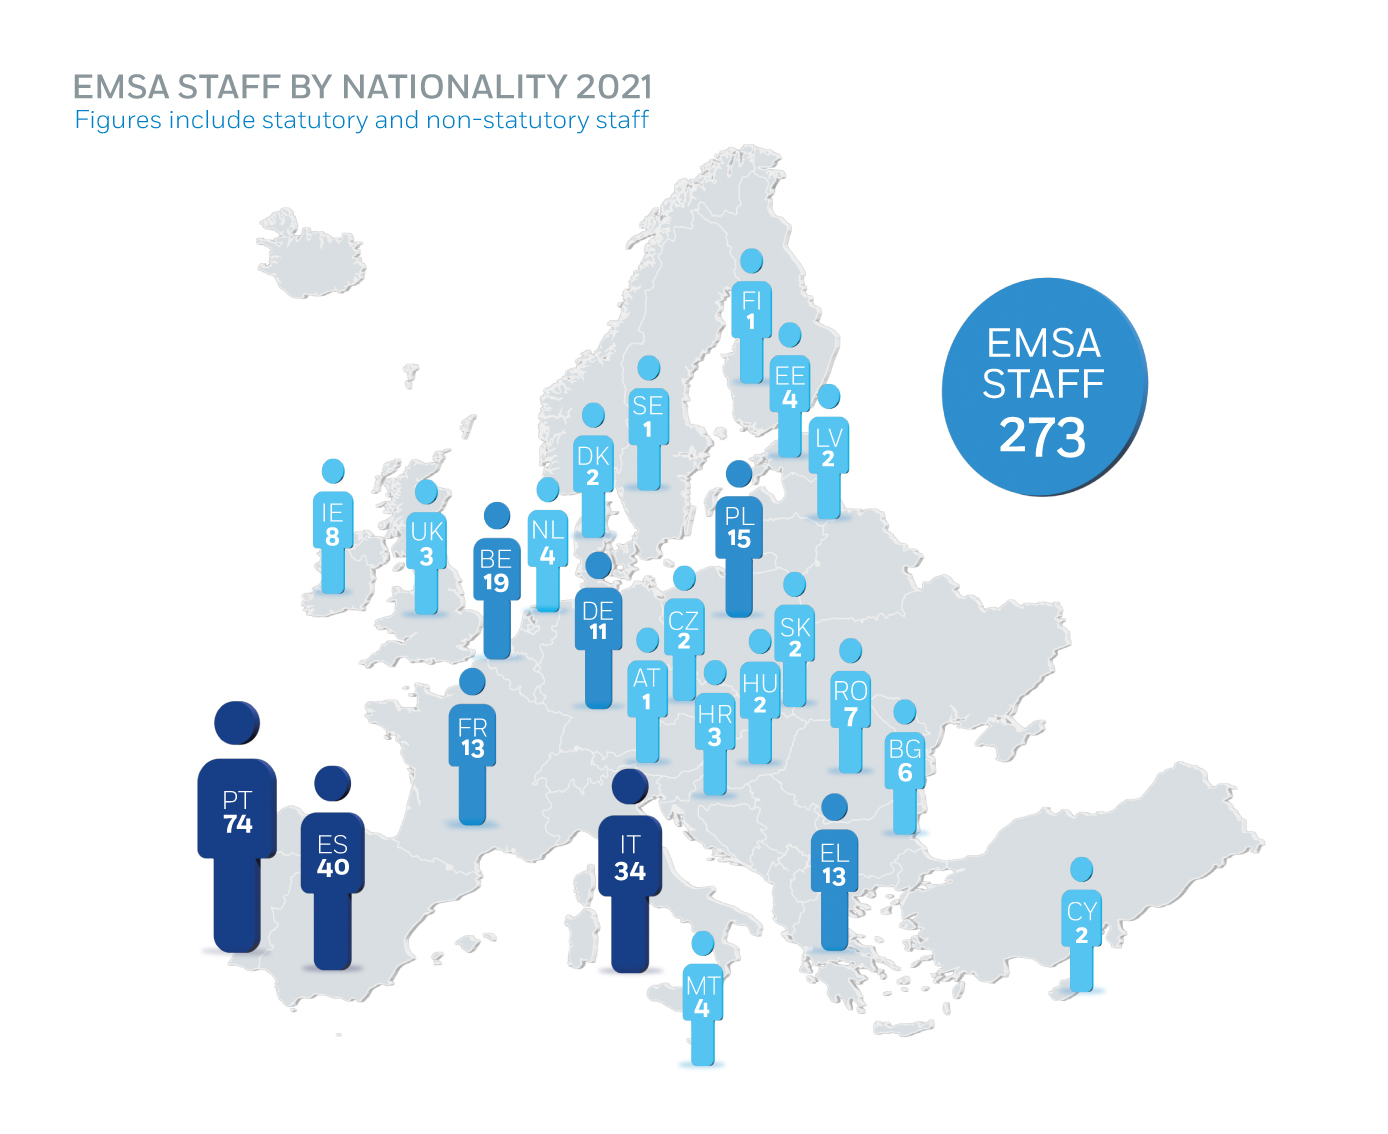 EMSA Staff by Nationality Image 1